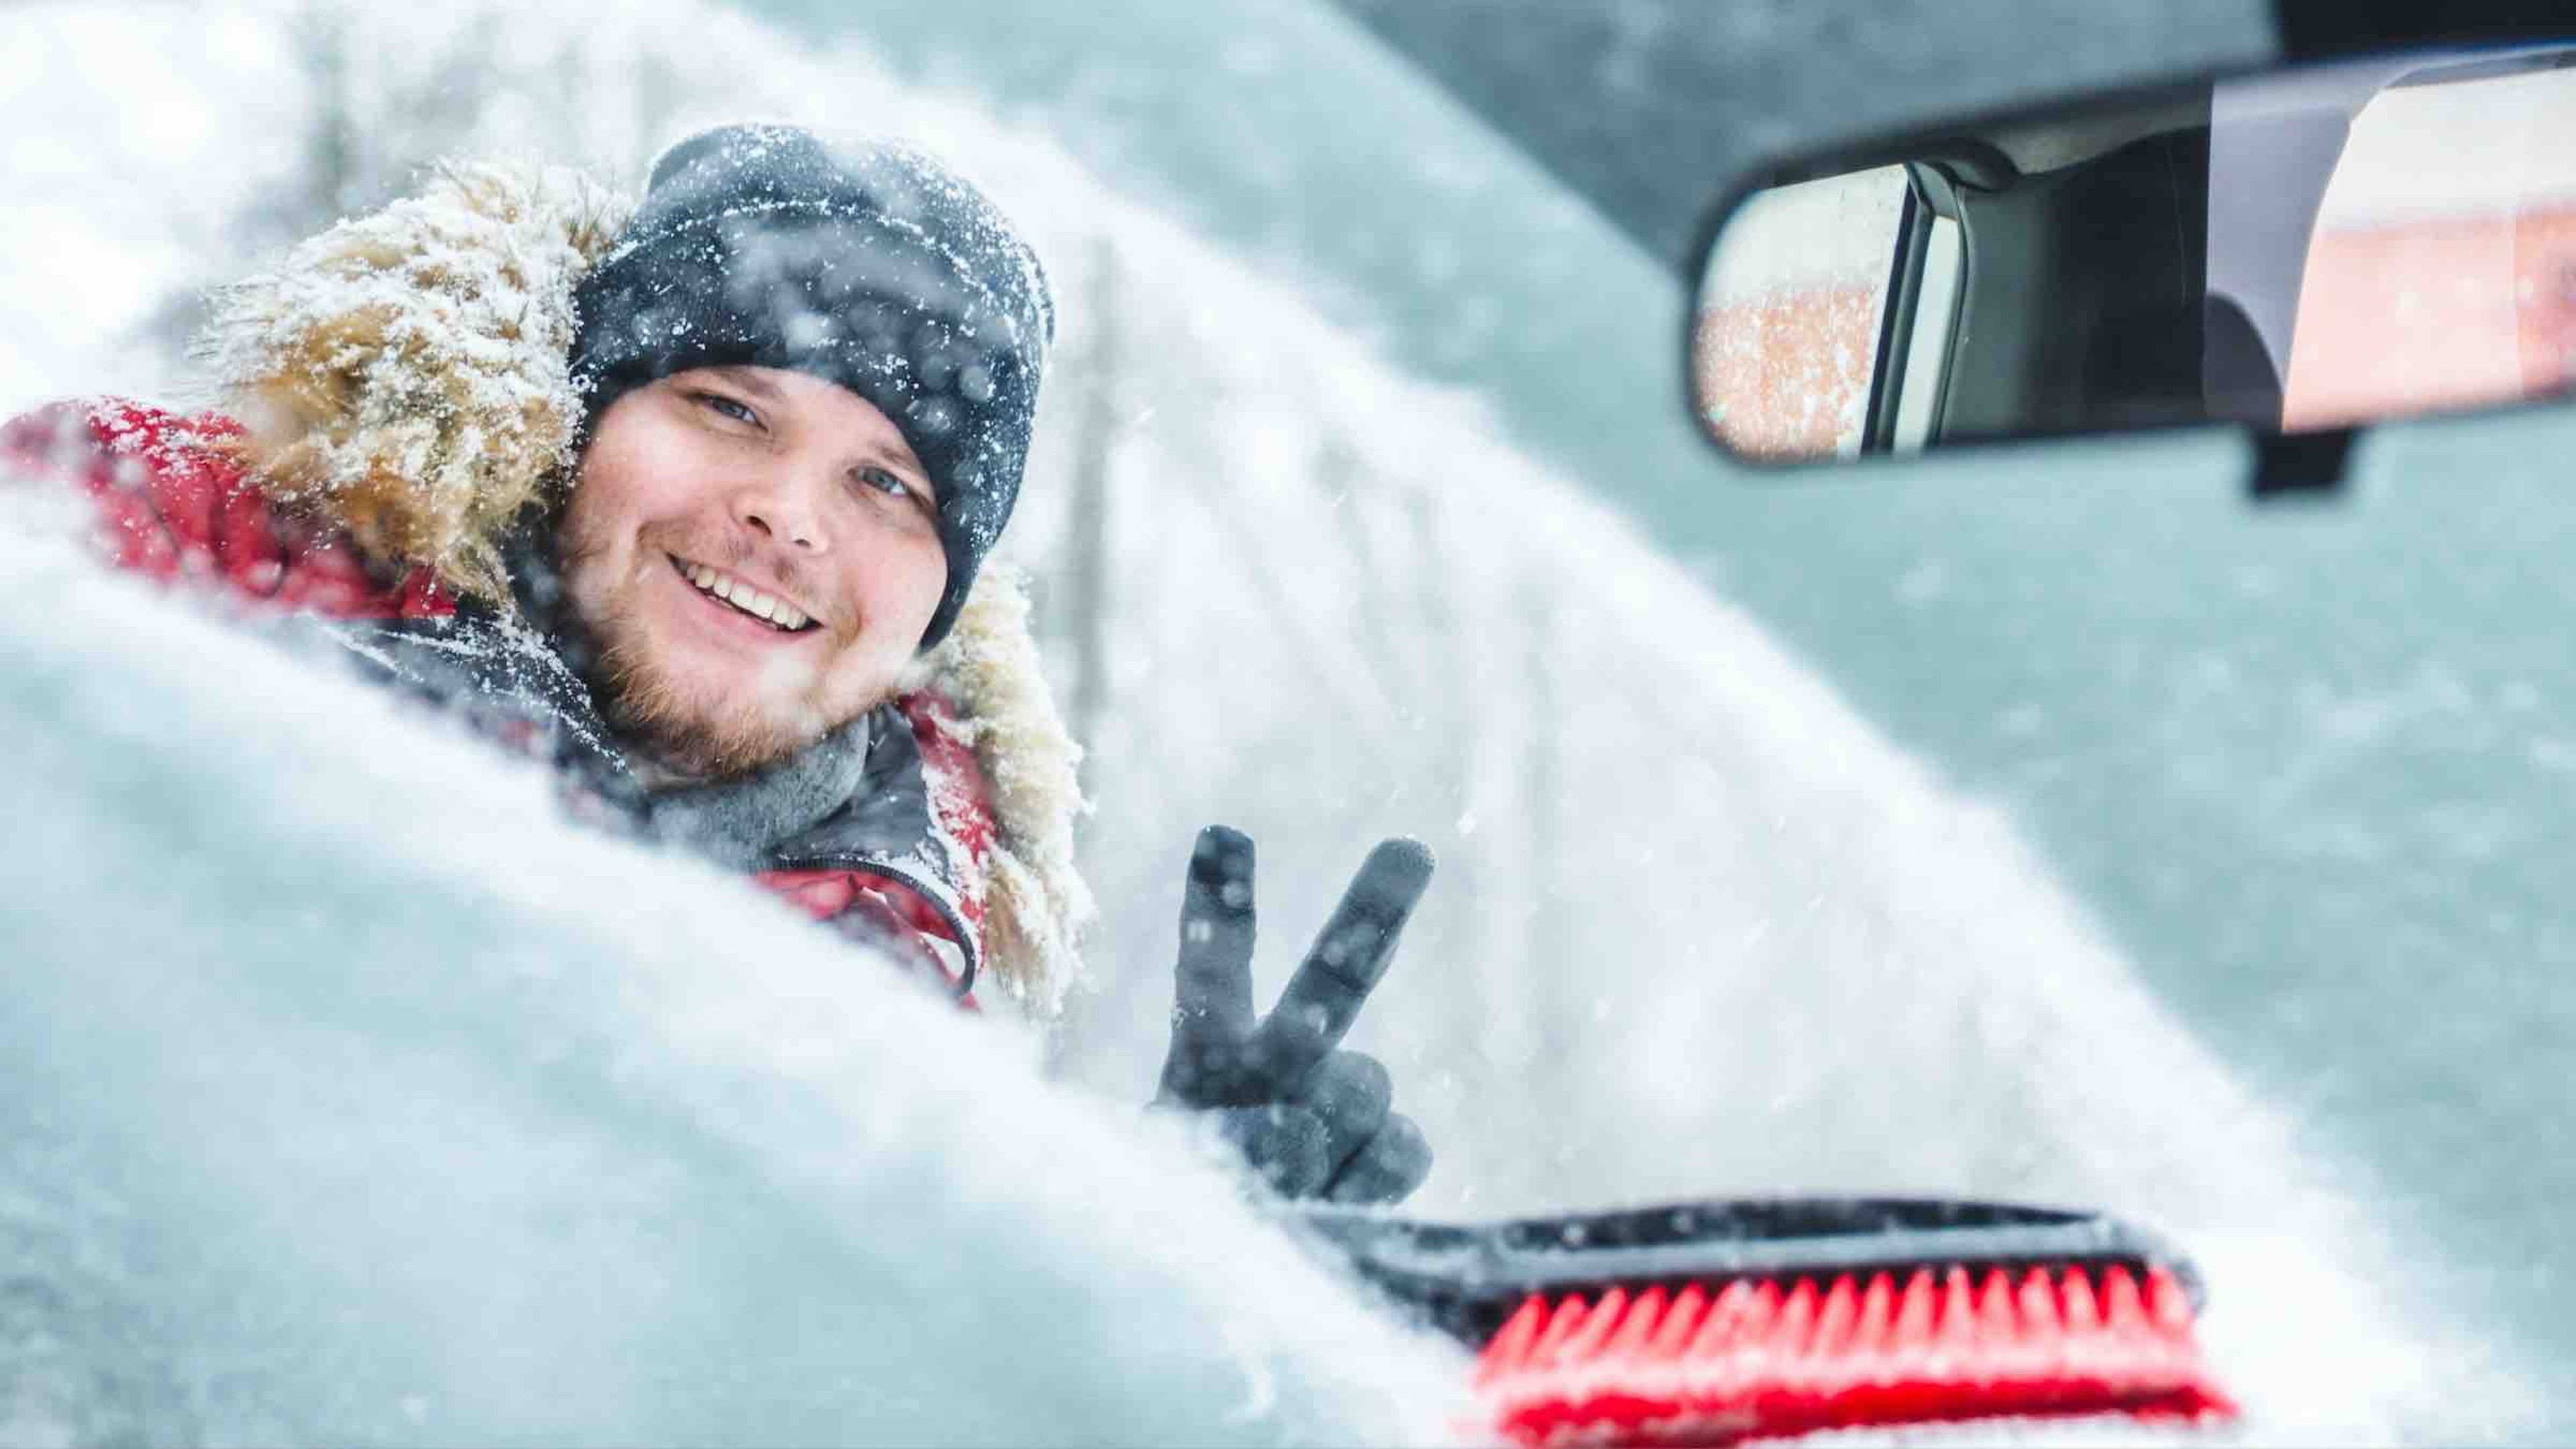 Quitar hielo y nieve parabrisas coche